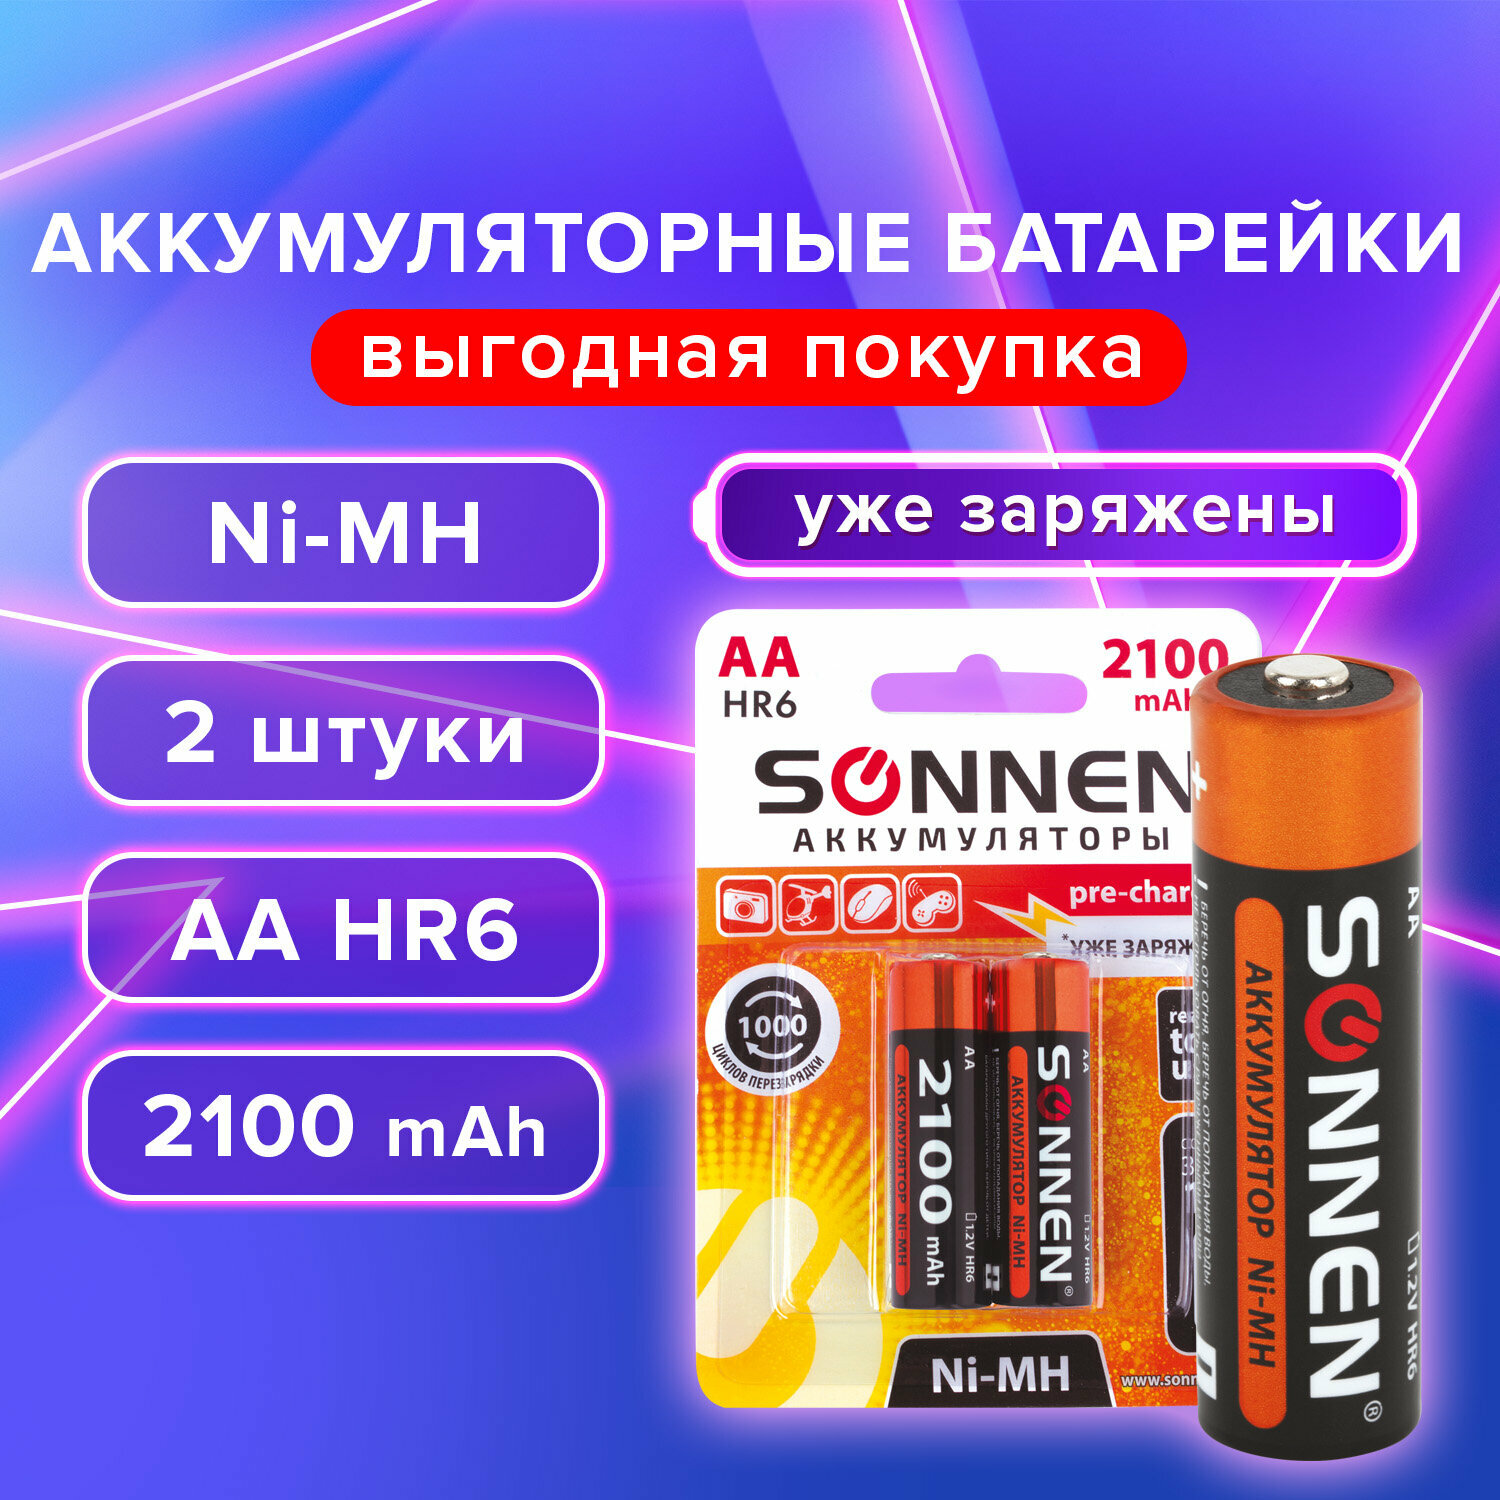 Батарейки аккумуляторные Ni-Mh пальчиковые Комплект 2 шт, Аа (HR6) 2100 mAh, Sonnen, 454234